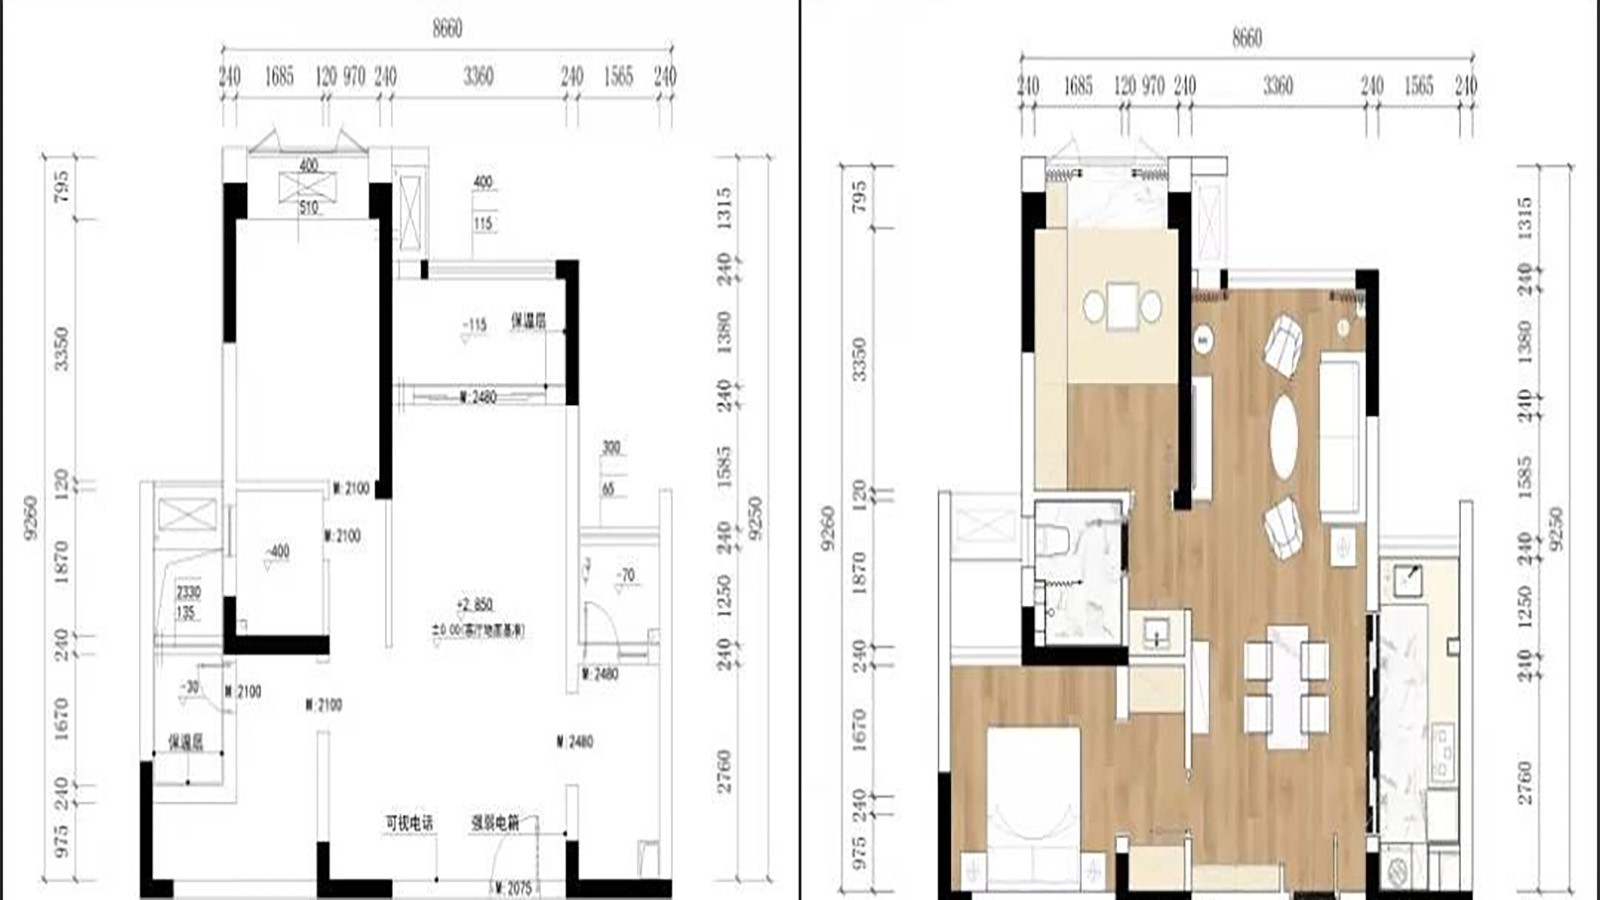 98现代两房装修效果图,打造有格调的家装修案例效果图-美广网(图1)